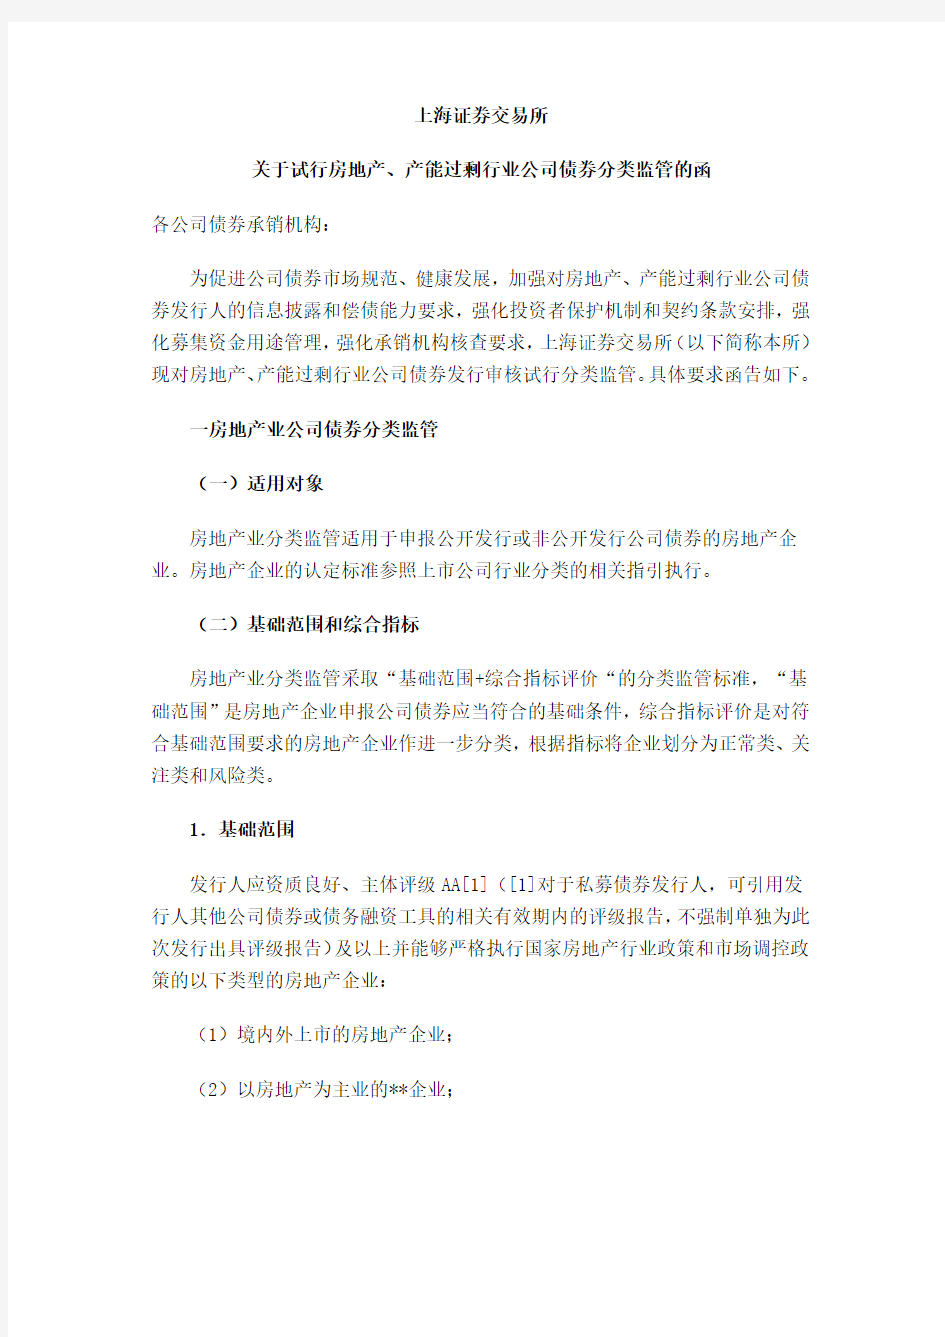 上海证券交易所关于试行房地产产能过剩行业公司债券分类监管的函